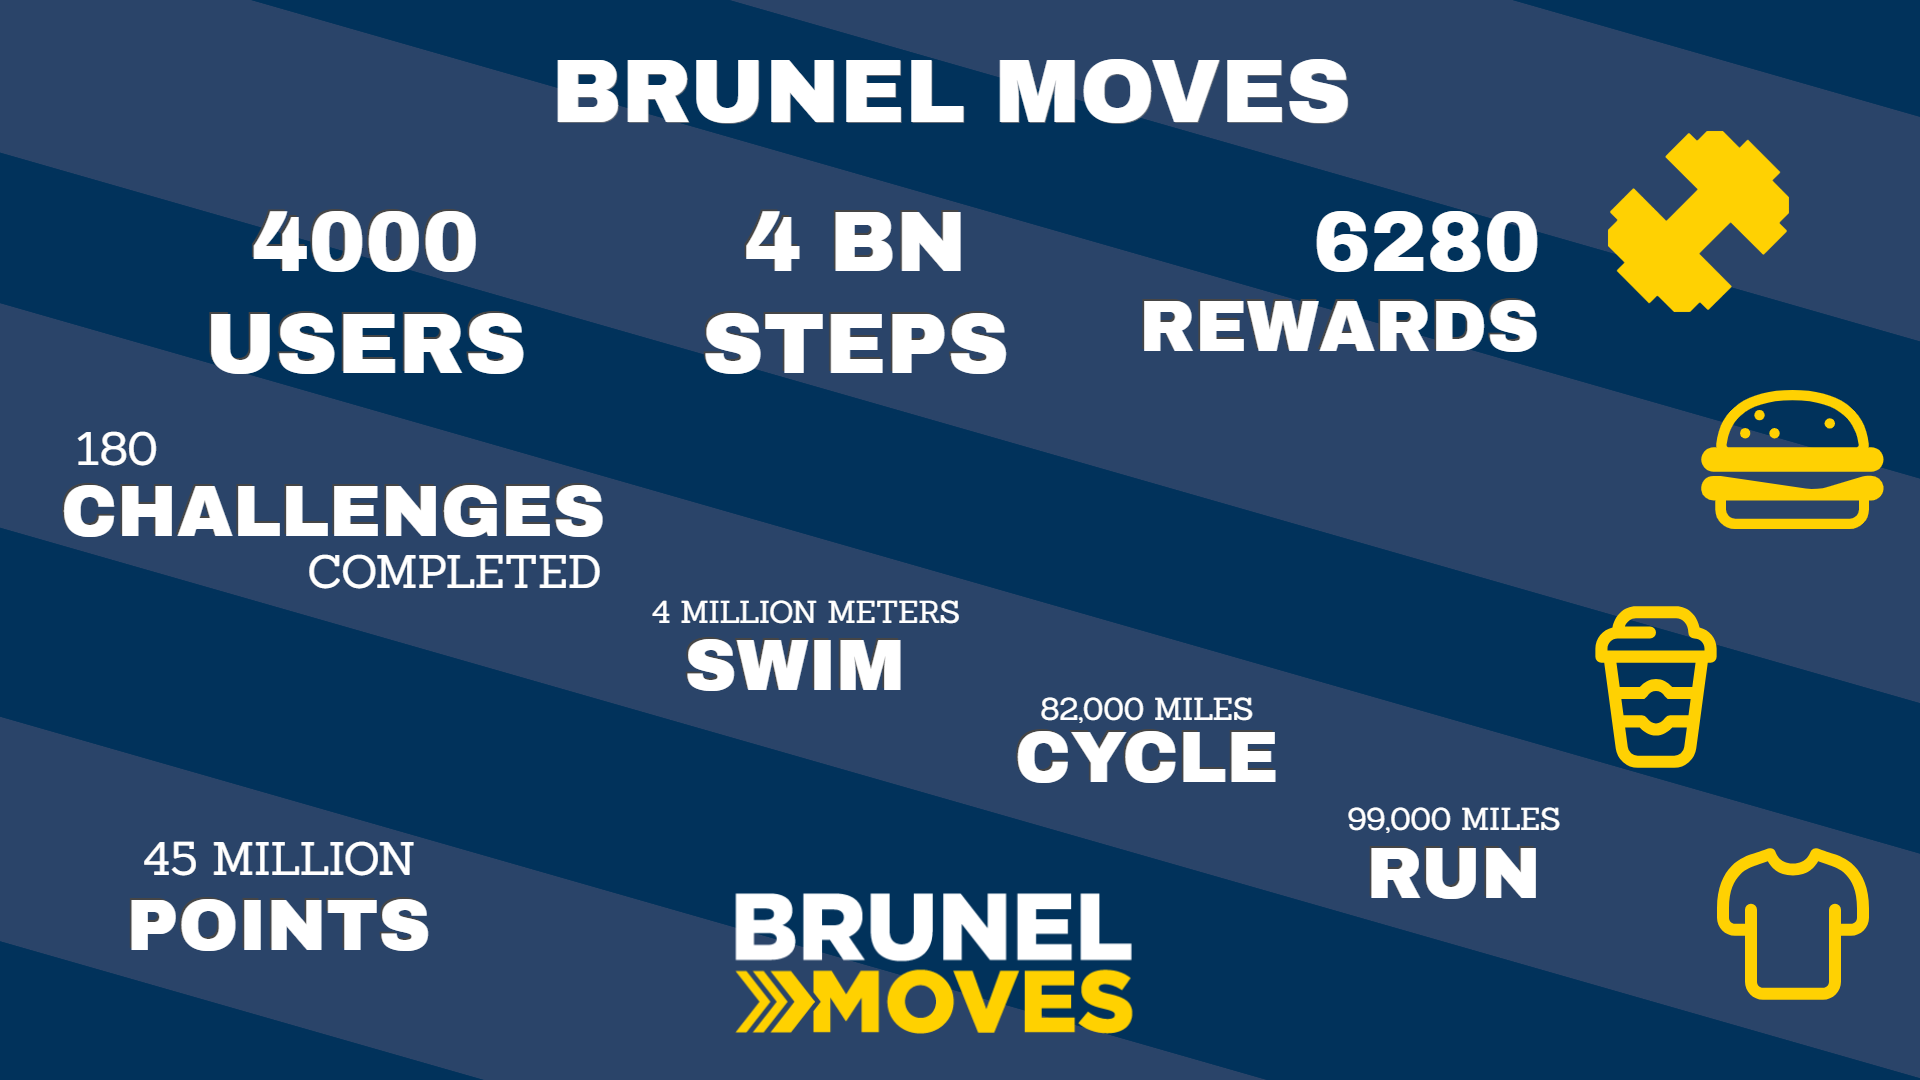 4000 Brunel Moves info